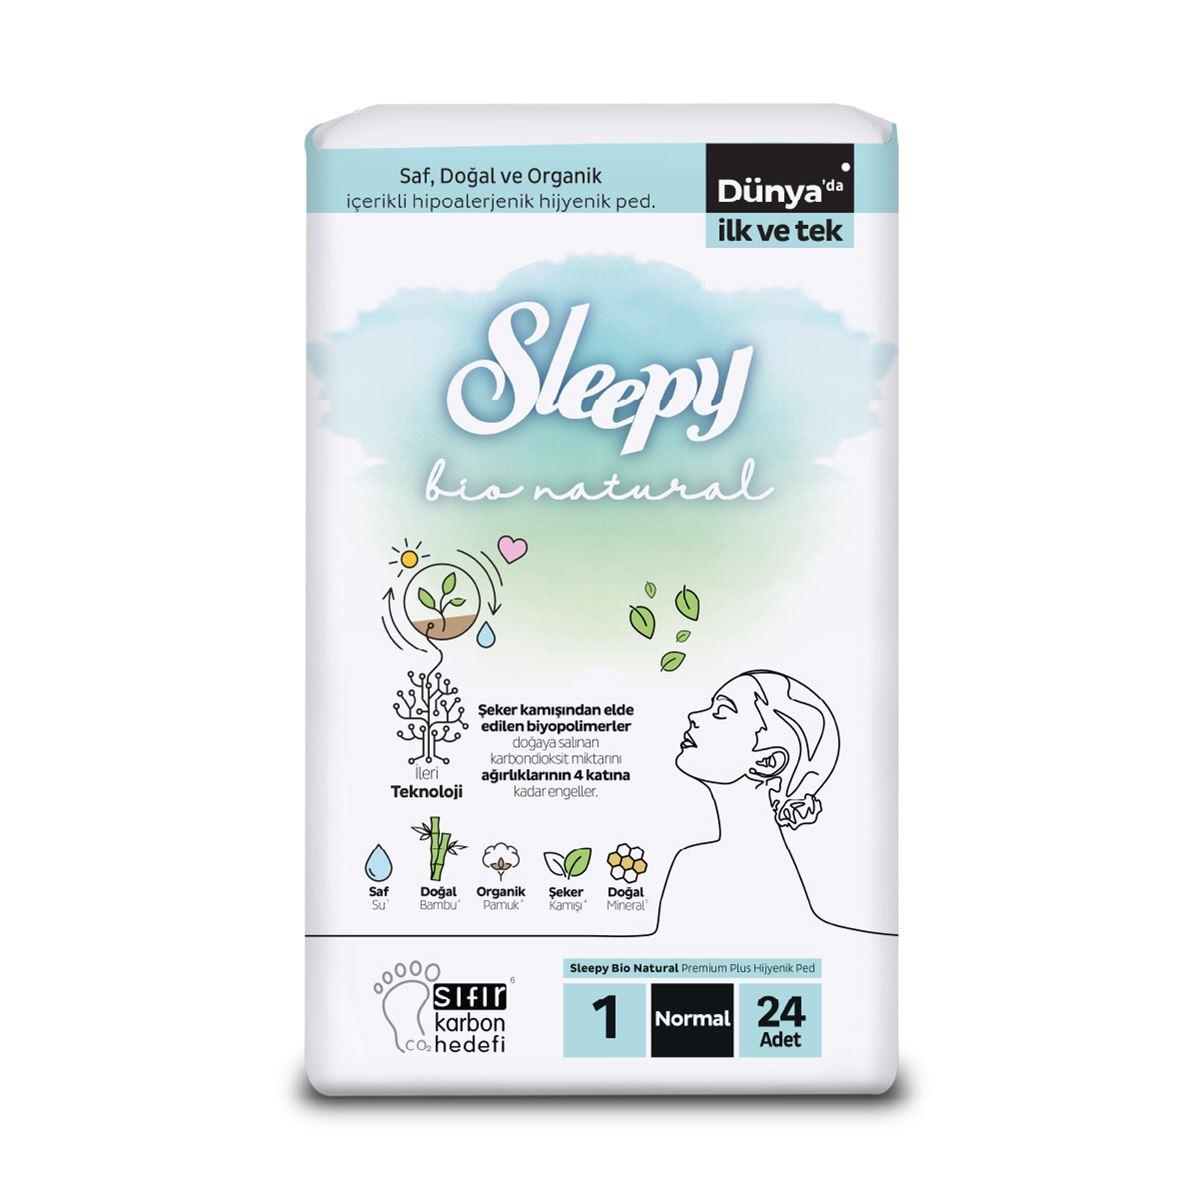 Sleepy Bio Natural Premium Plus Hijyenik Ped Normal 24x4 96 Adet Ped